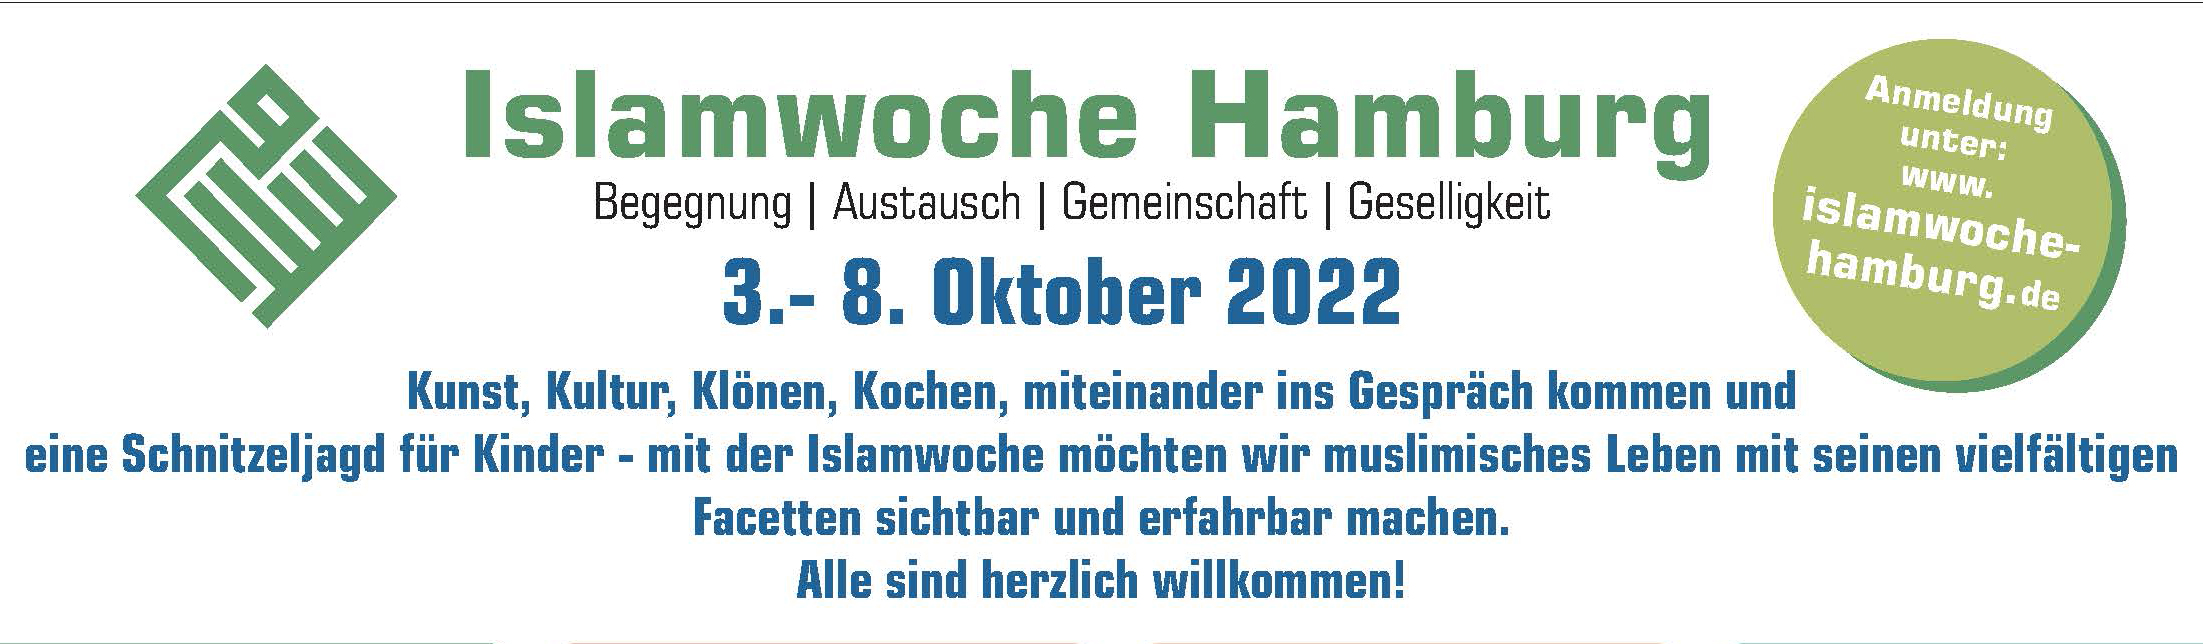 3.-8. Oktober 2022: Islamwoche Hamburg